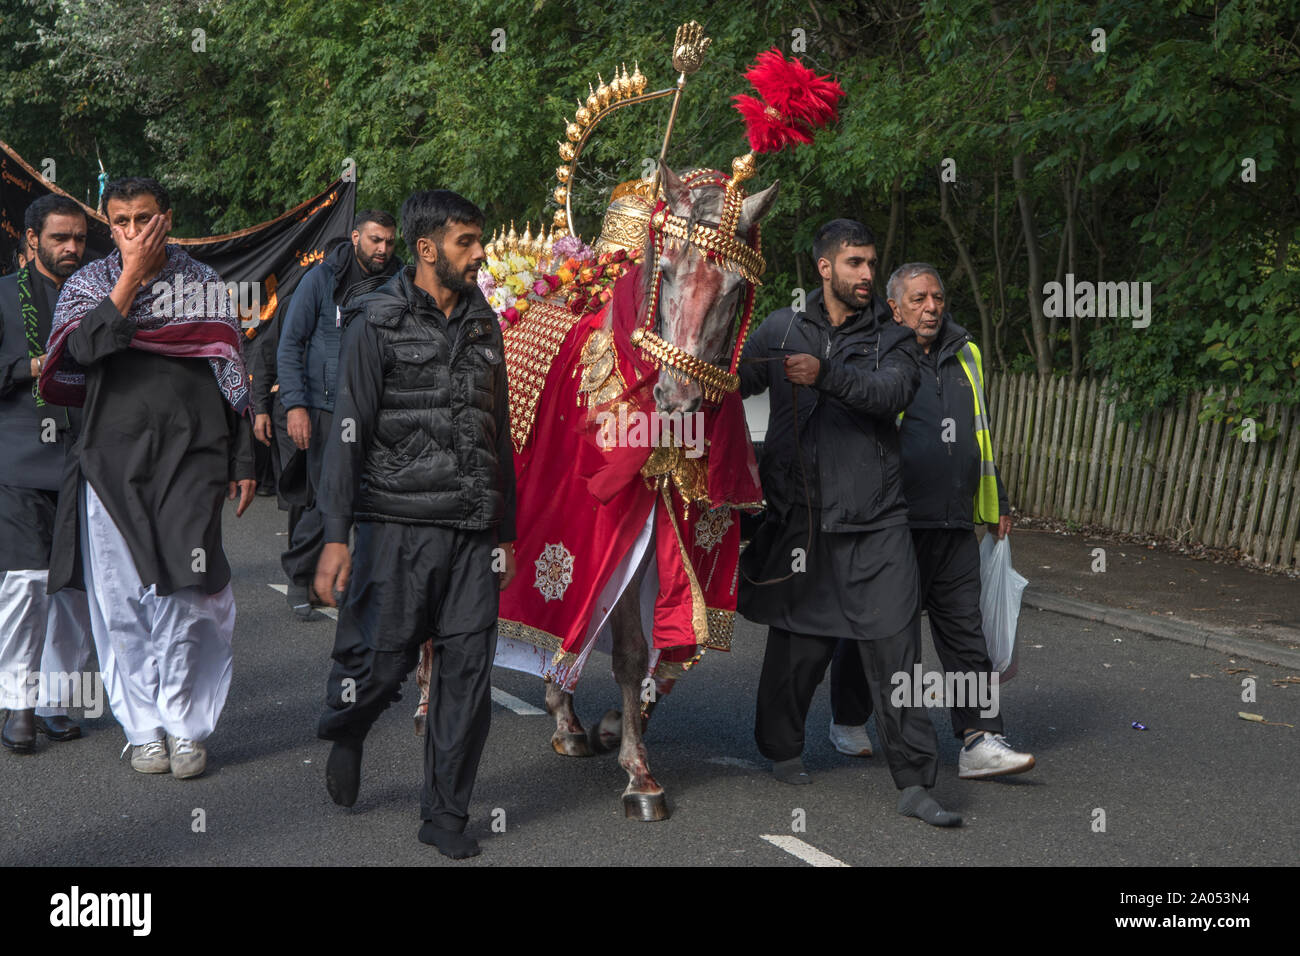 Comunità musulmana Bradford 2019 2010S UK. Giorno di Ashura parade musulmani sciiti ricorda il martirio di Hussain. Il cavallo rappresenta quello che Husayn ibn Ali rode nella battaglia di Karbala HOMER SYKES Foto Stock